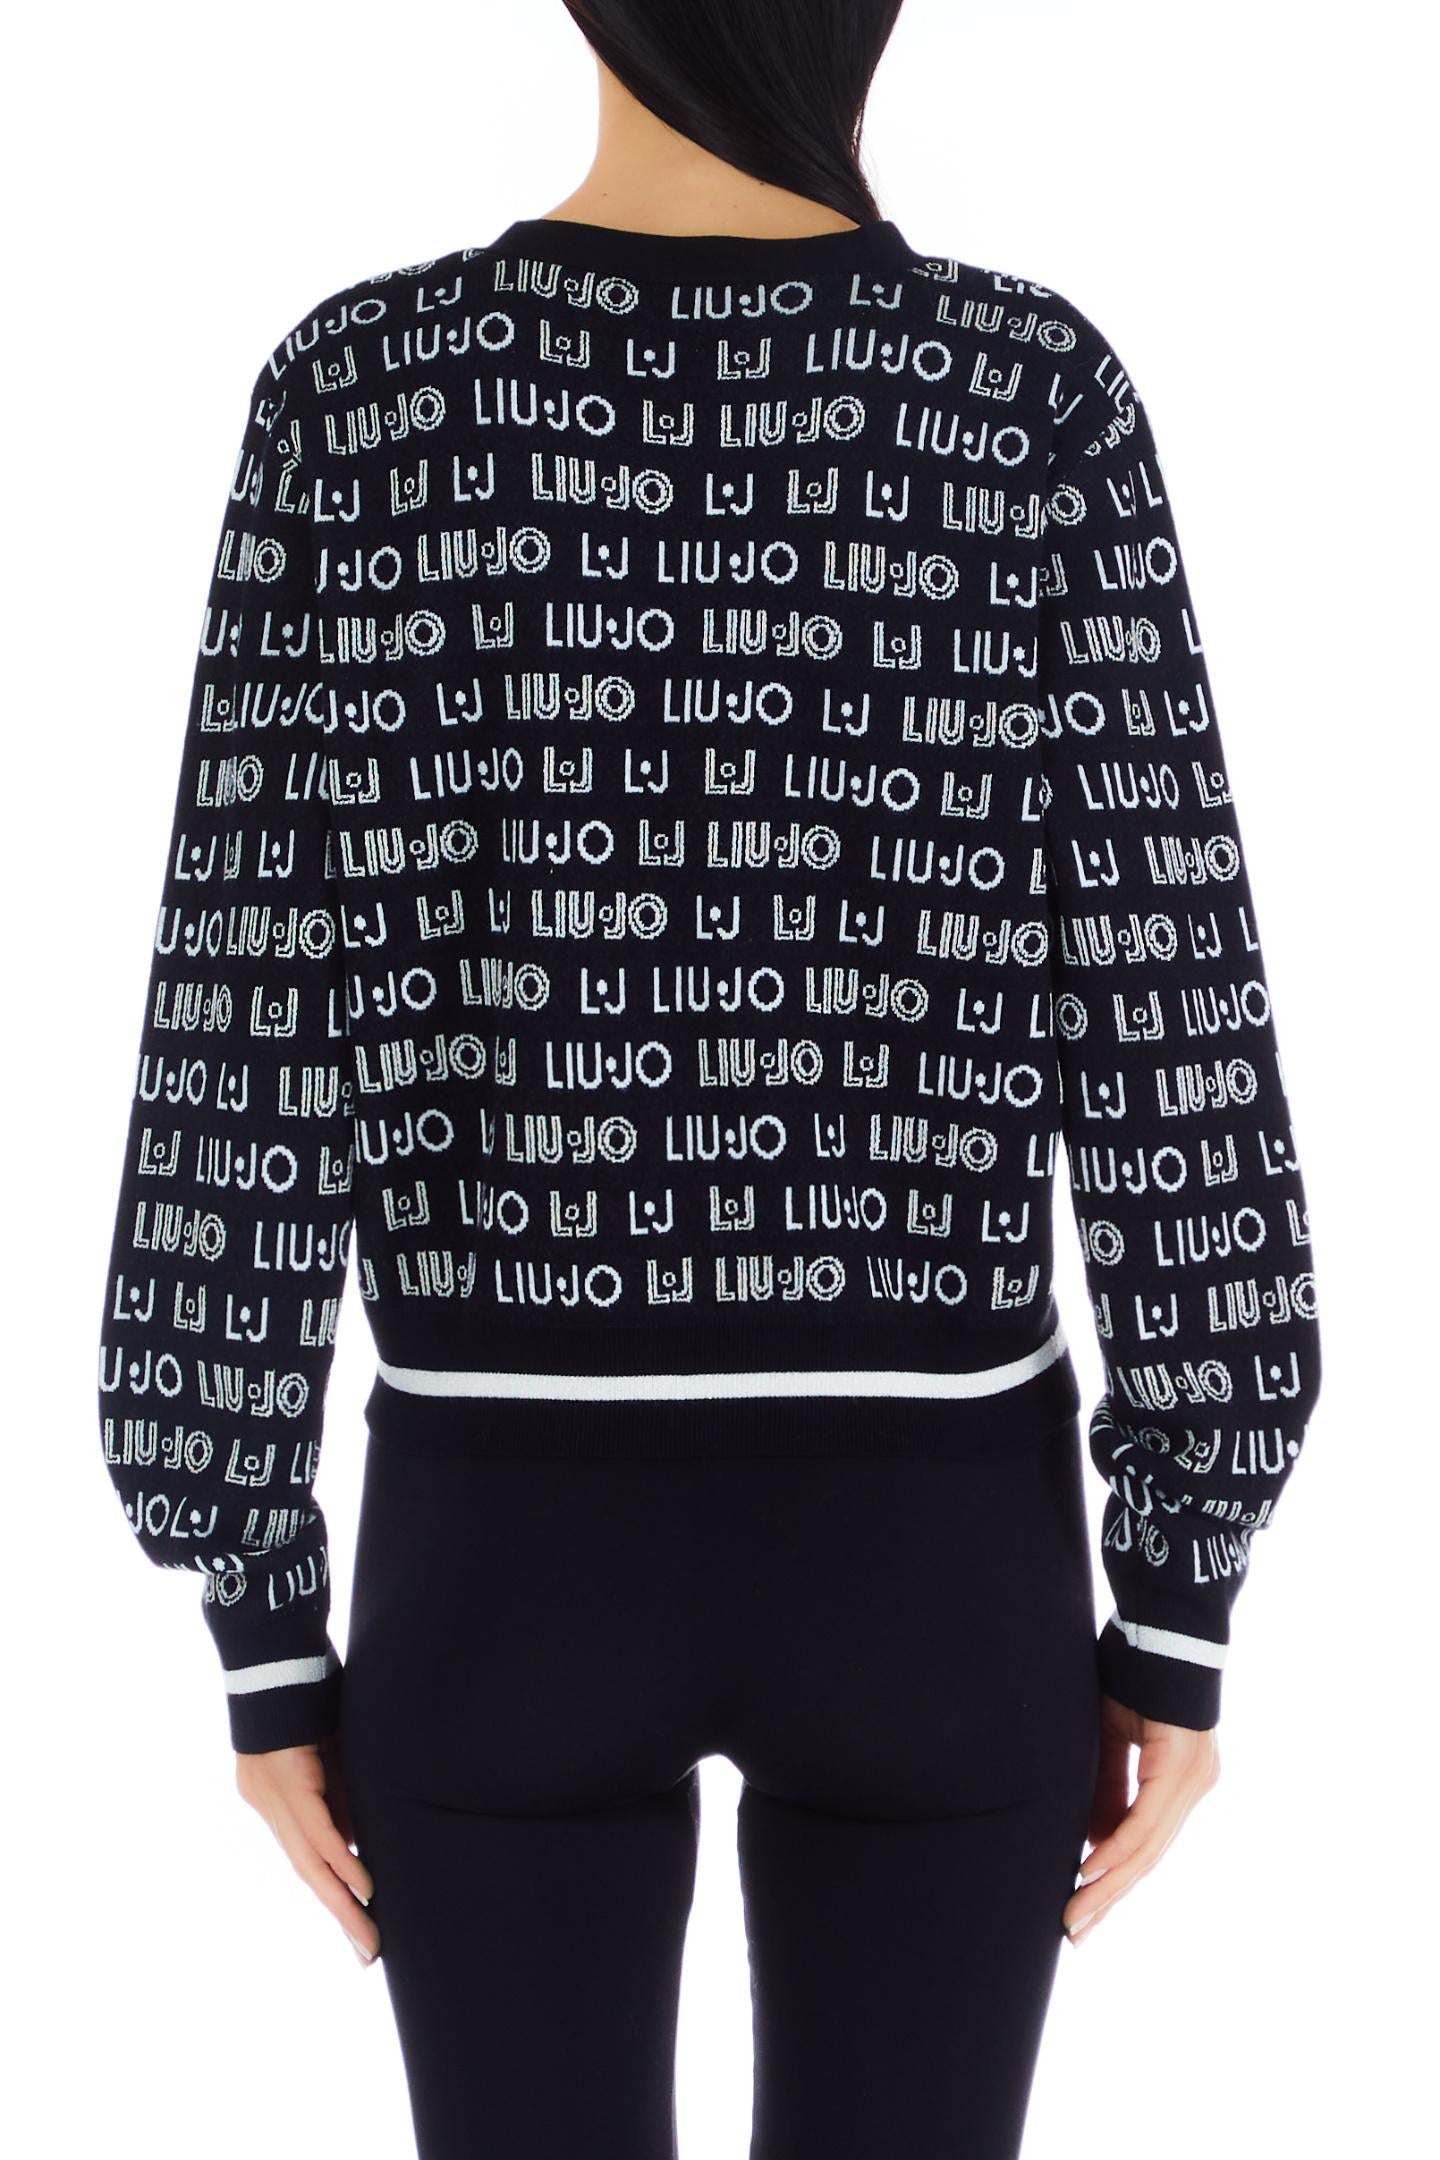 Liu Jo Women's Sweater, Open Knit Model M/L with Regular Fit, TF3211